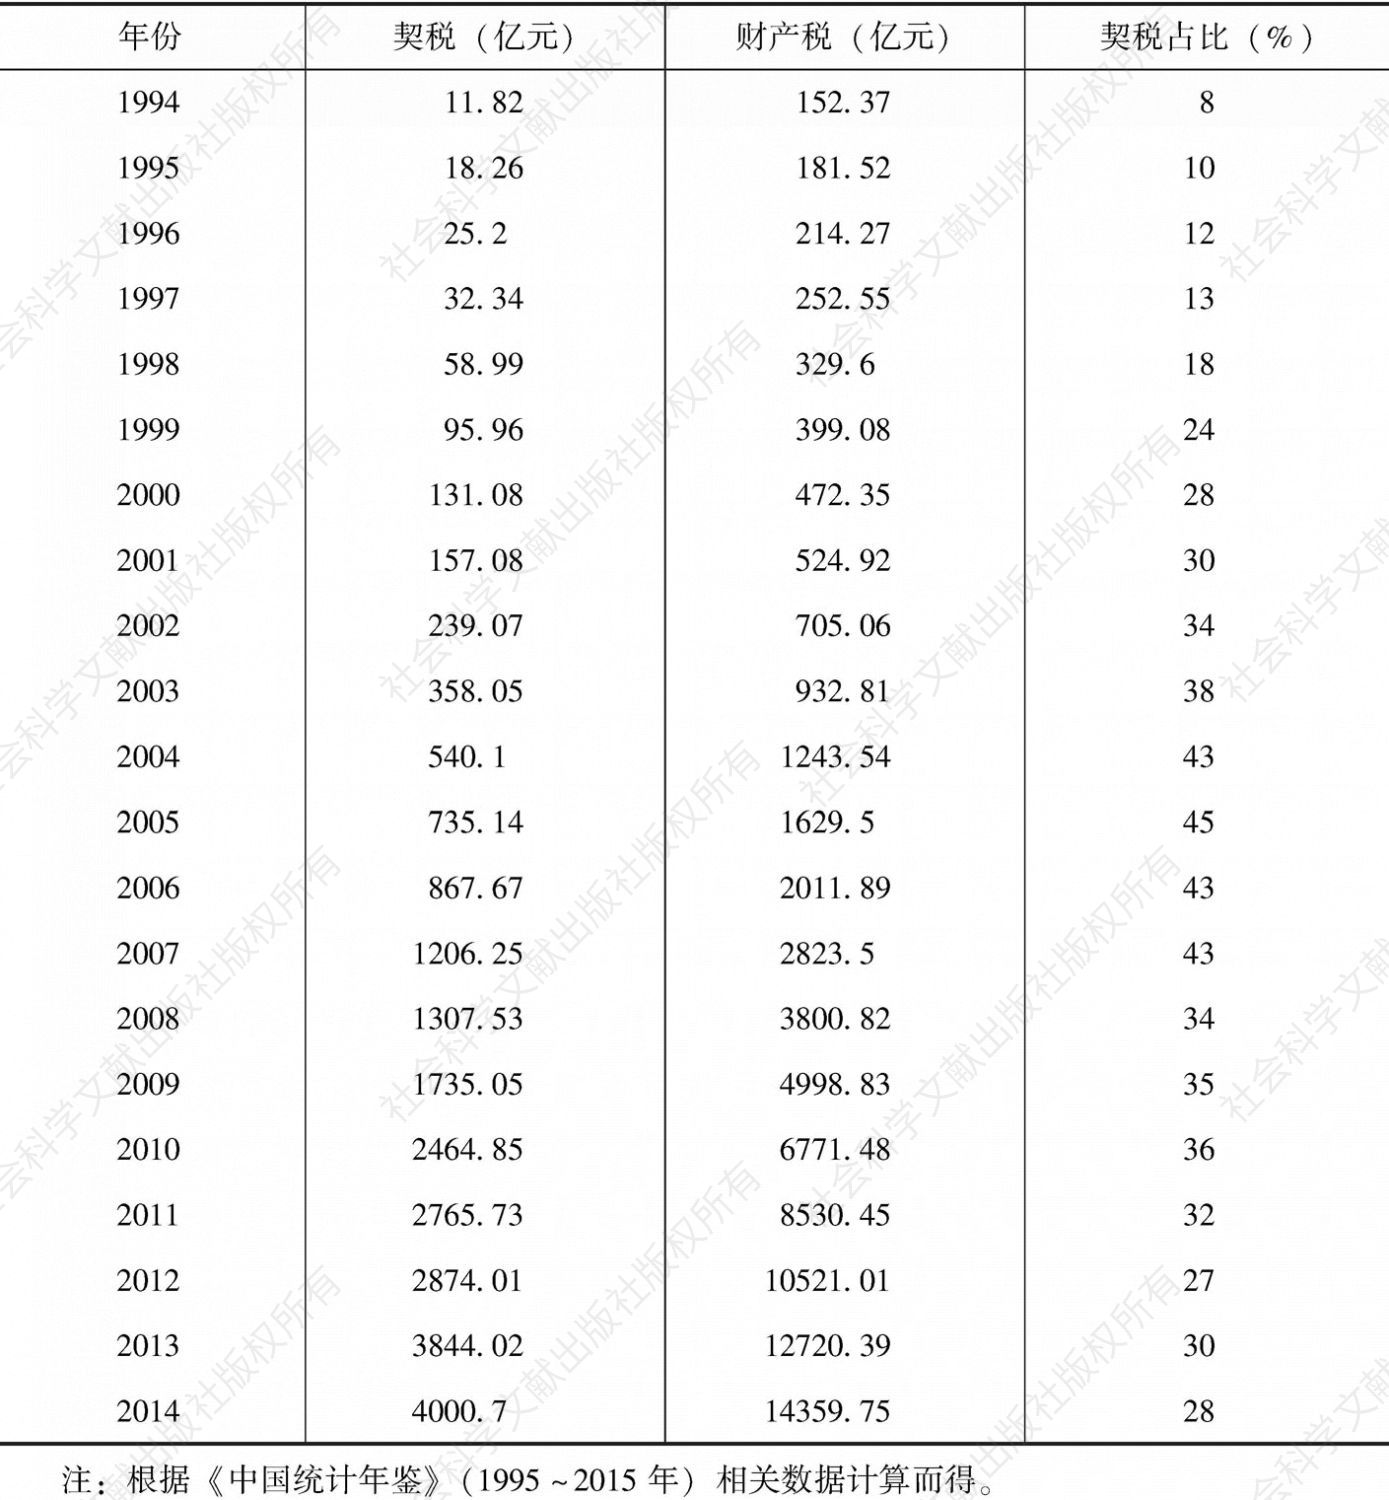 表7-10 1994～2014年契税在财产税总收入中的比重